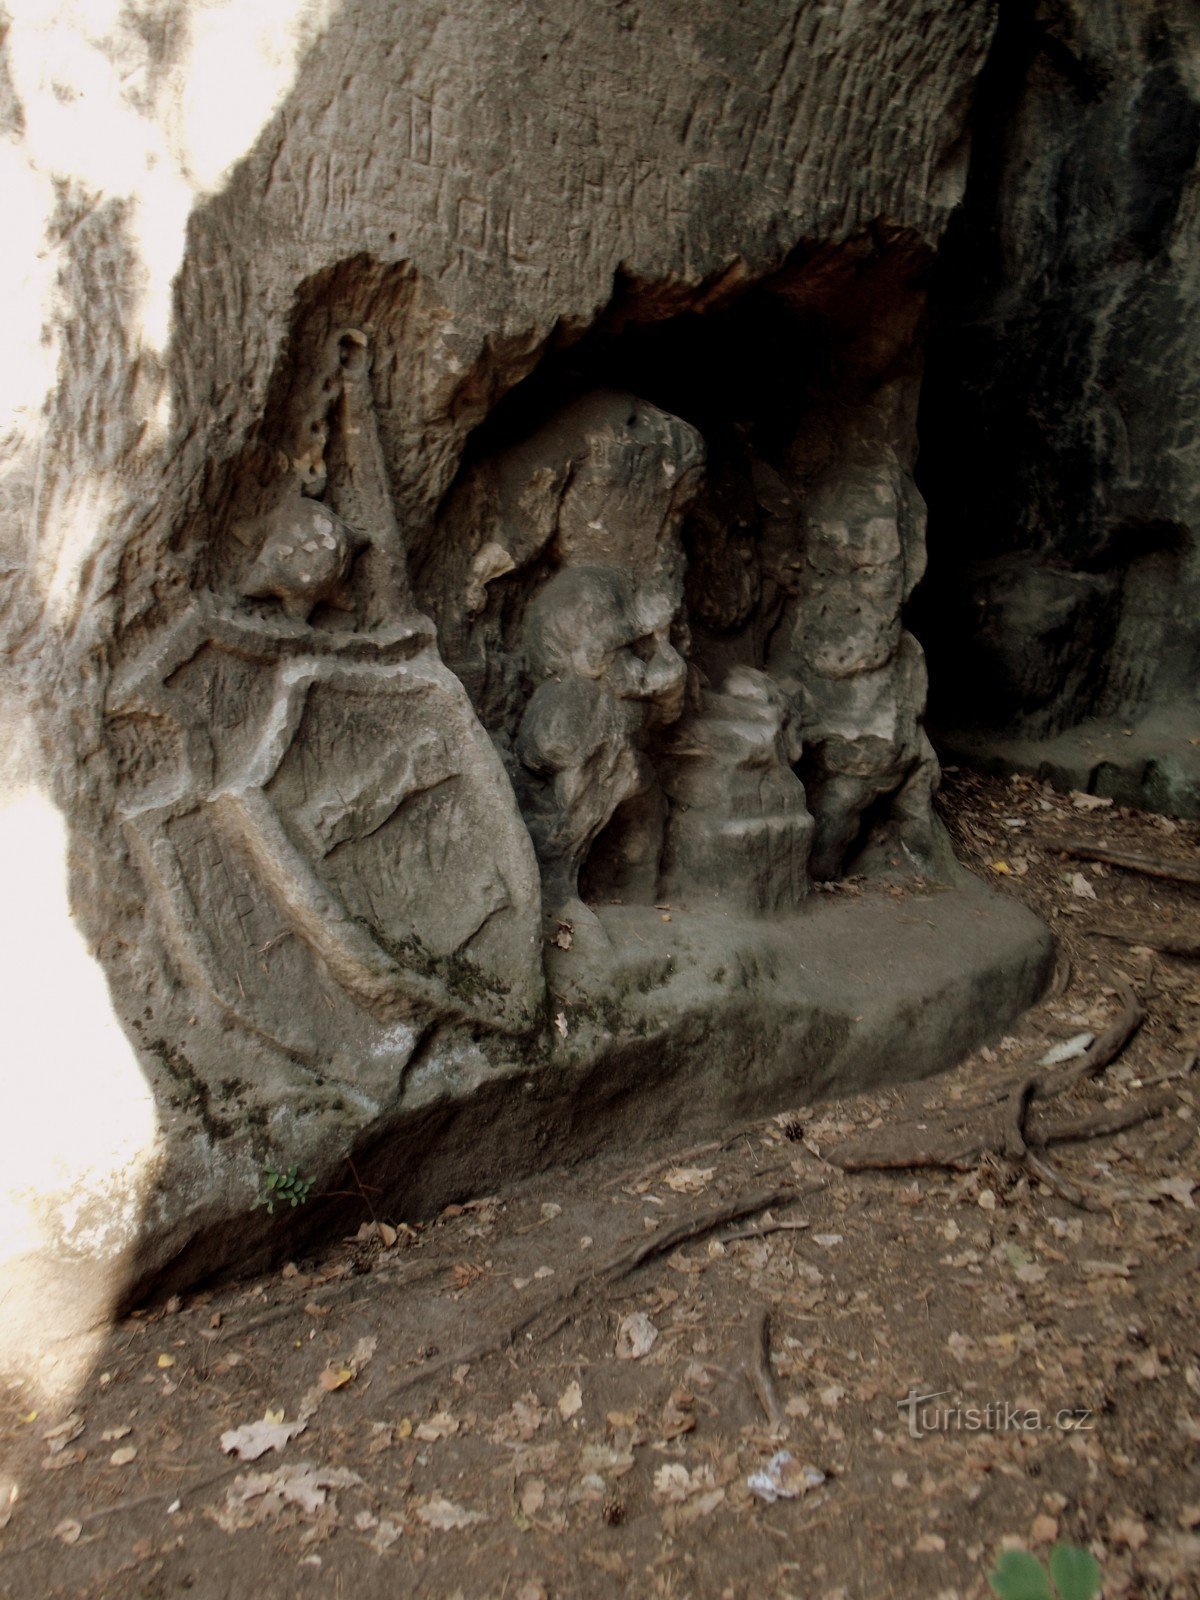 Blaník și peștera Klácelka